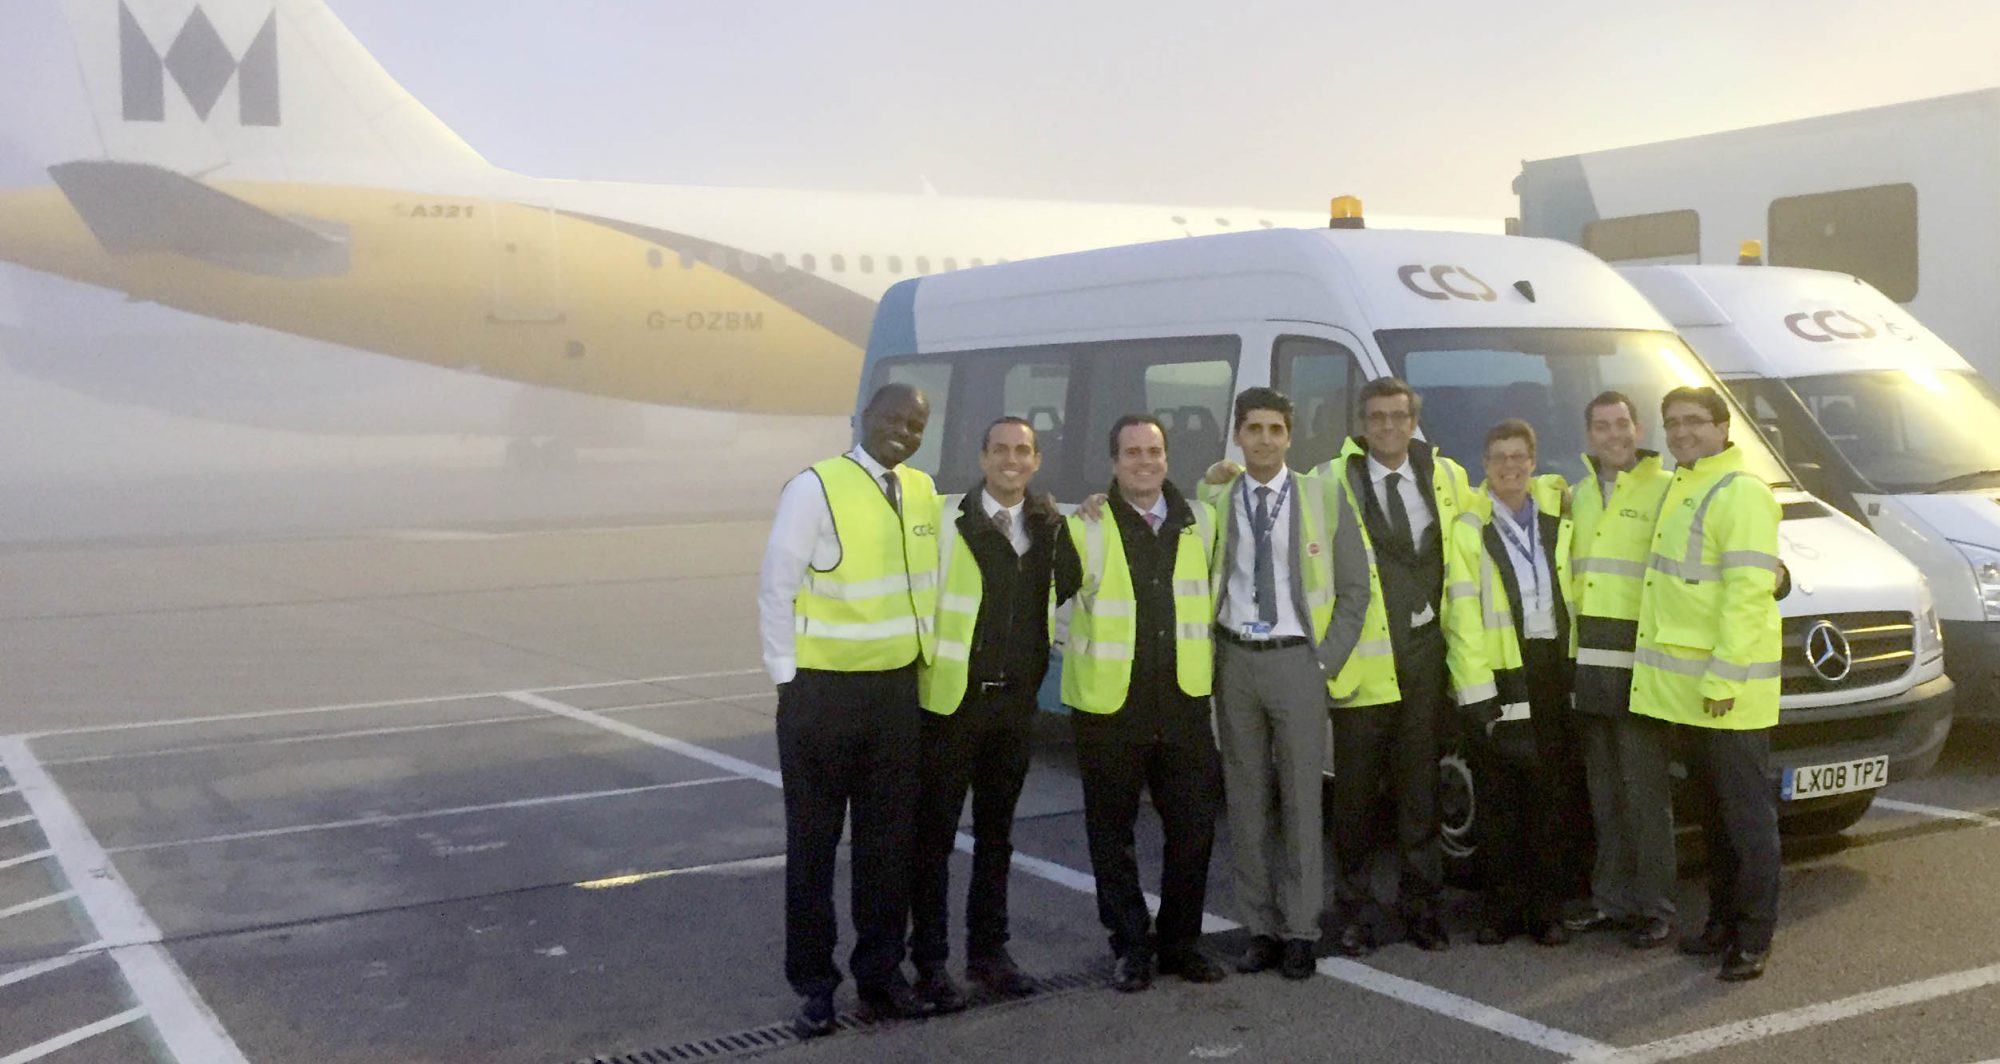 Adjudicado el Servicio de Personas con Movilidad Reducida del Aeropuerto de Luton en Reino Unido